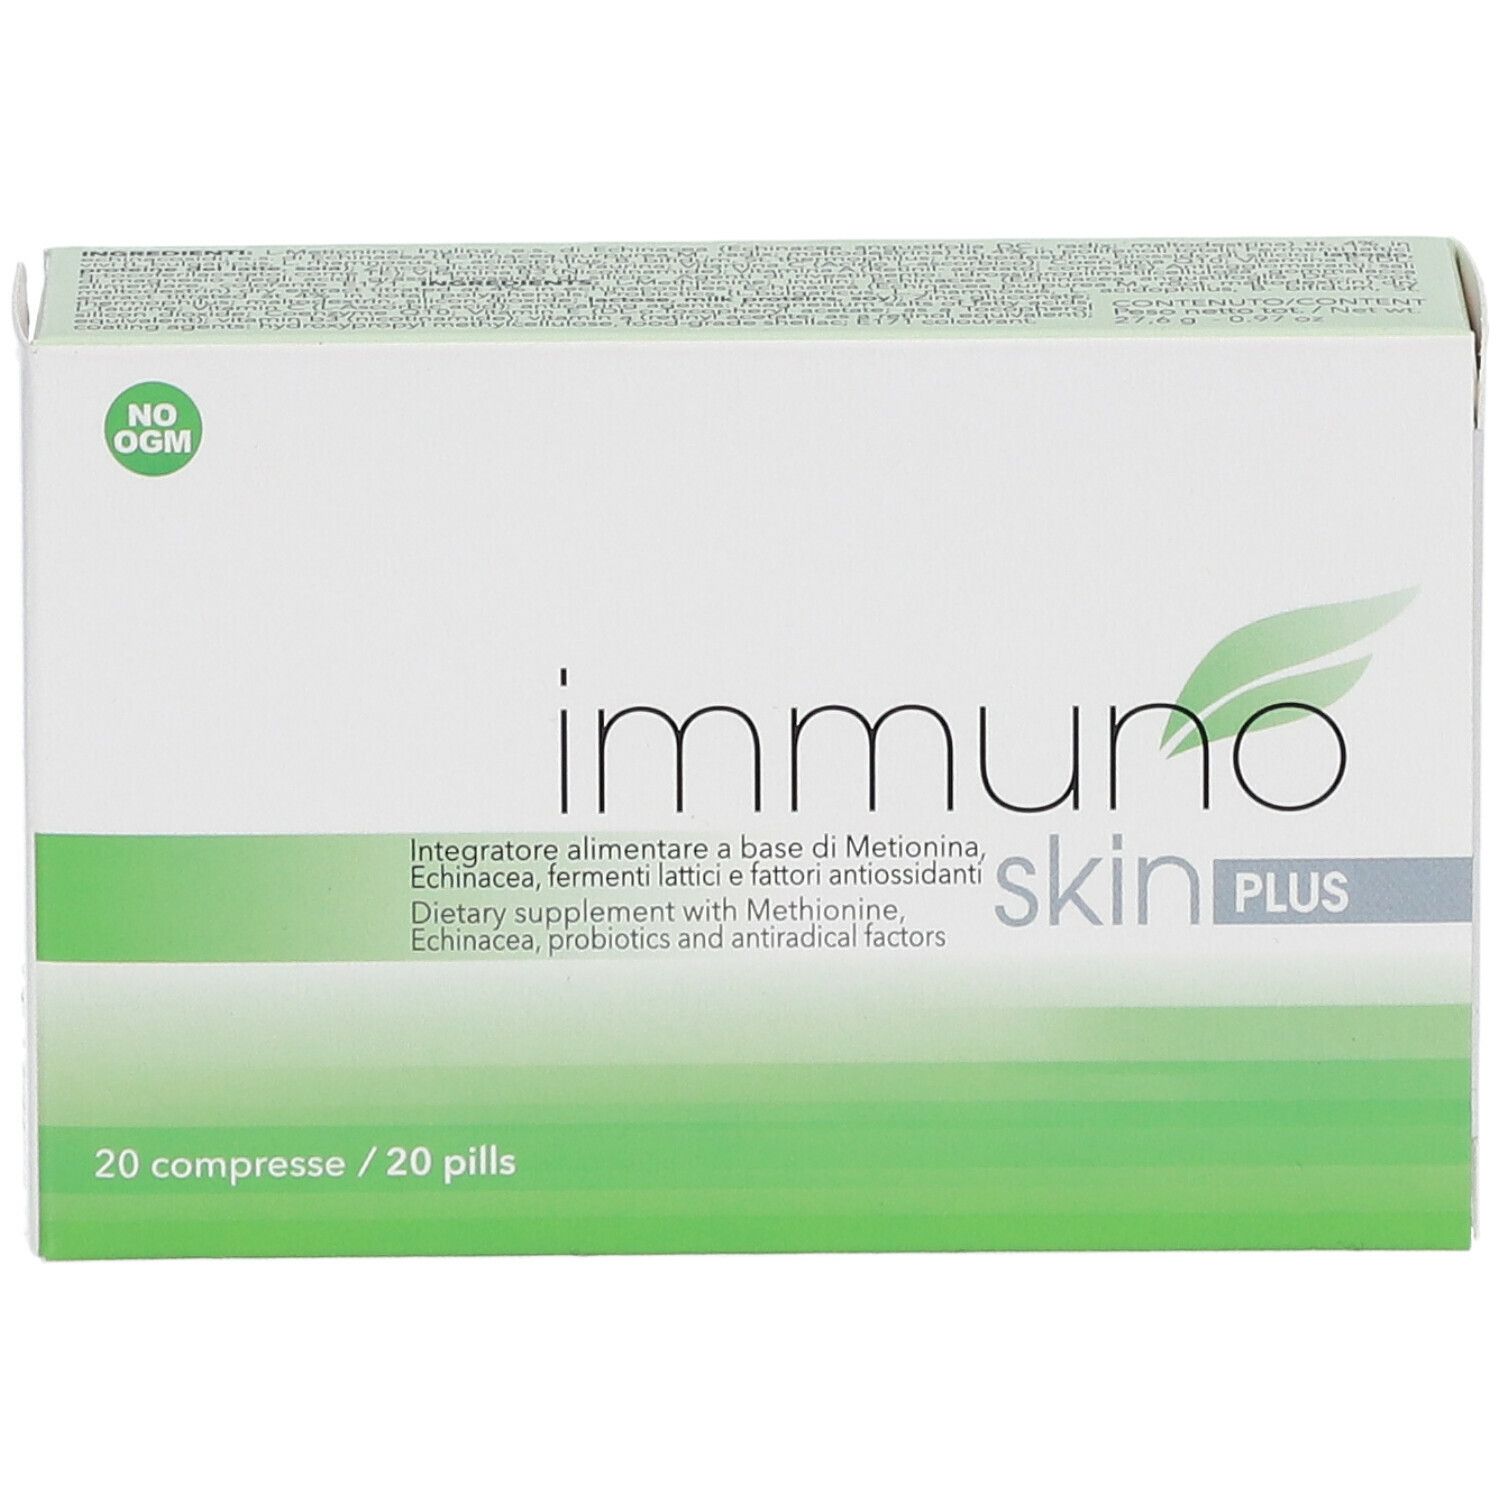 Immuno Skin PLUS